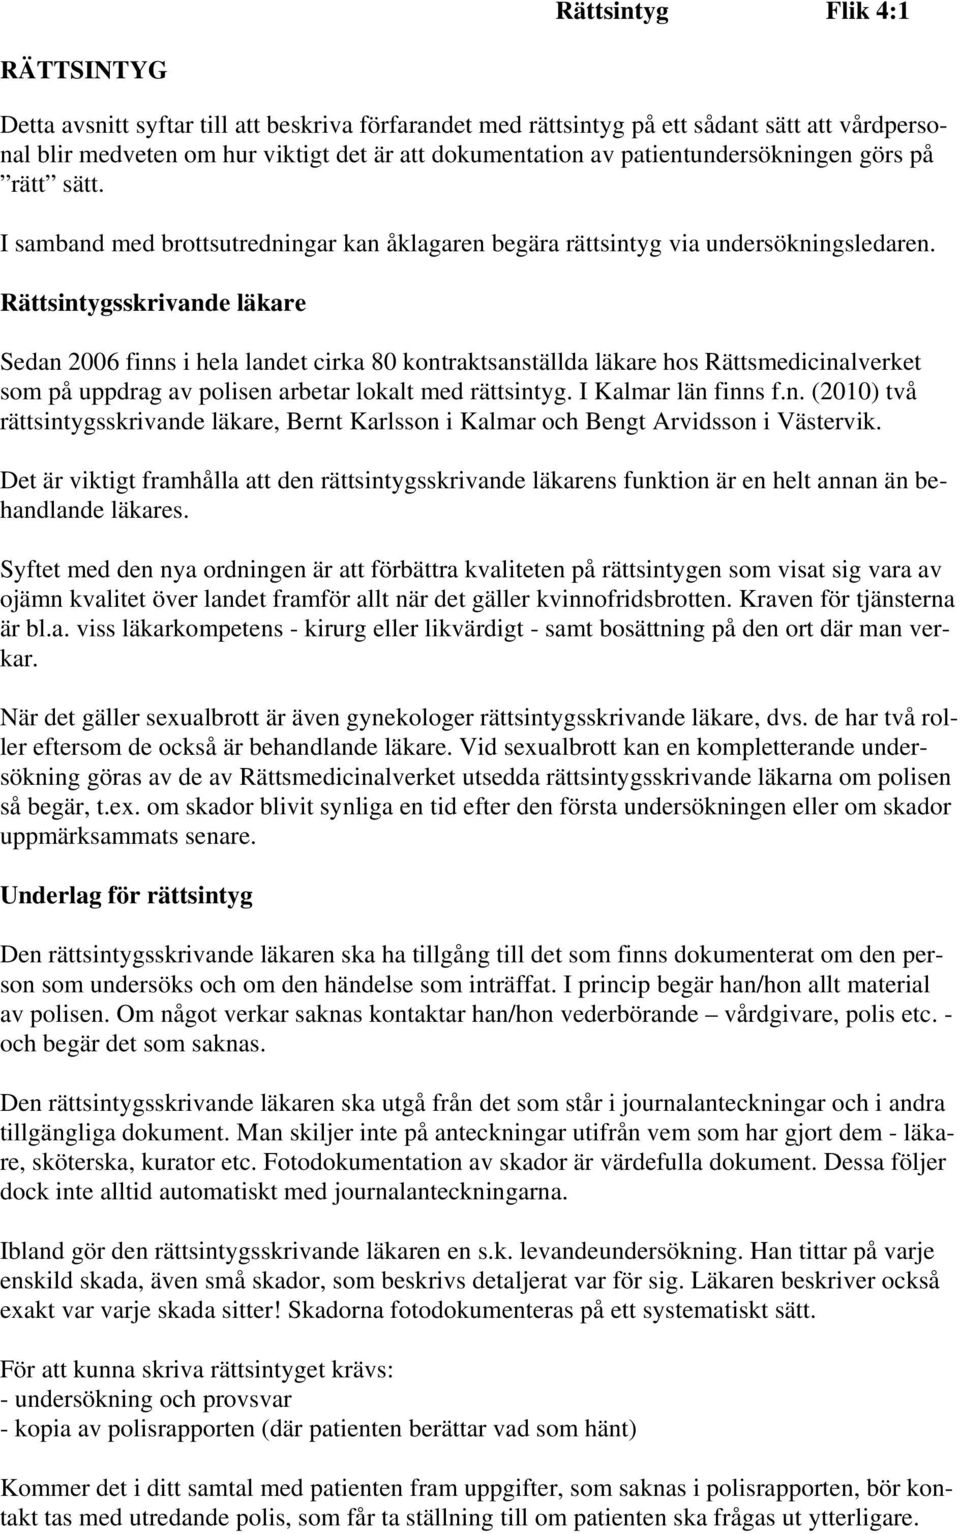 Rättsintygsskrivande läkare Sedan 2006 finns i hela landet cirka 80 kontraktsanställda läkare hos Rättsmedicinalverket som på uppdrag av polisen arbetar lokalt med rättsintyg. I Kalmar län finns f.n. (2010) två rättsintygsskrivande läkare, Bernt Karlsson i Kalmar och Bengt Arvidsson i Västervik.